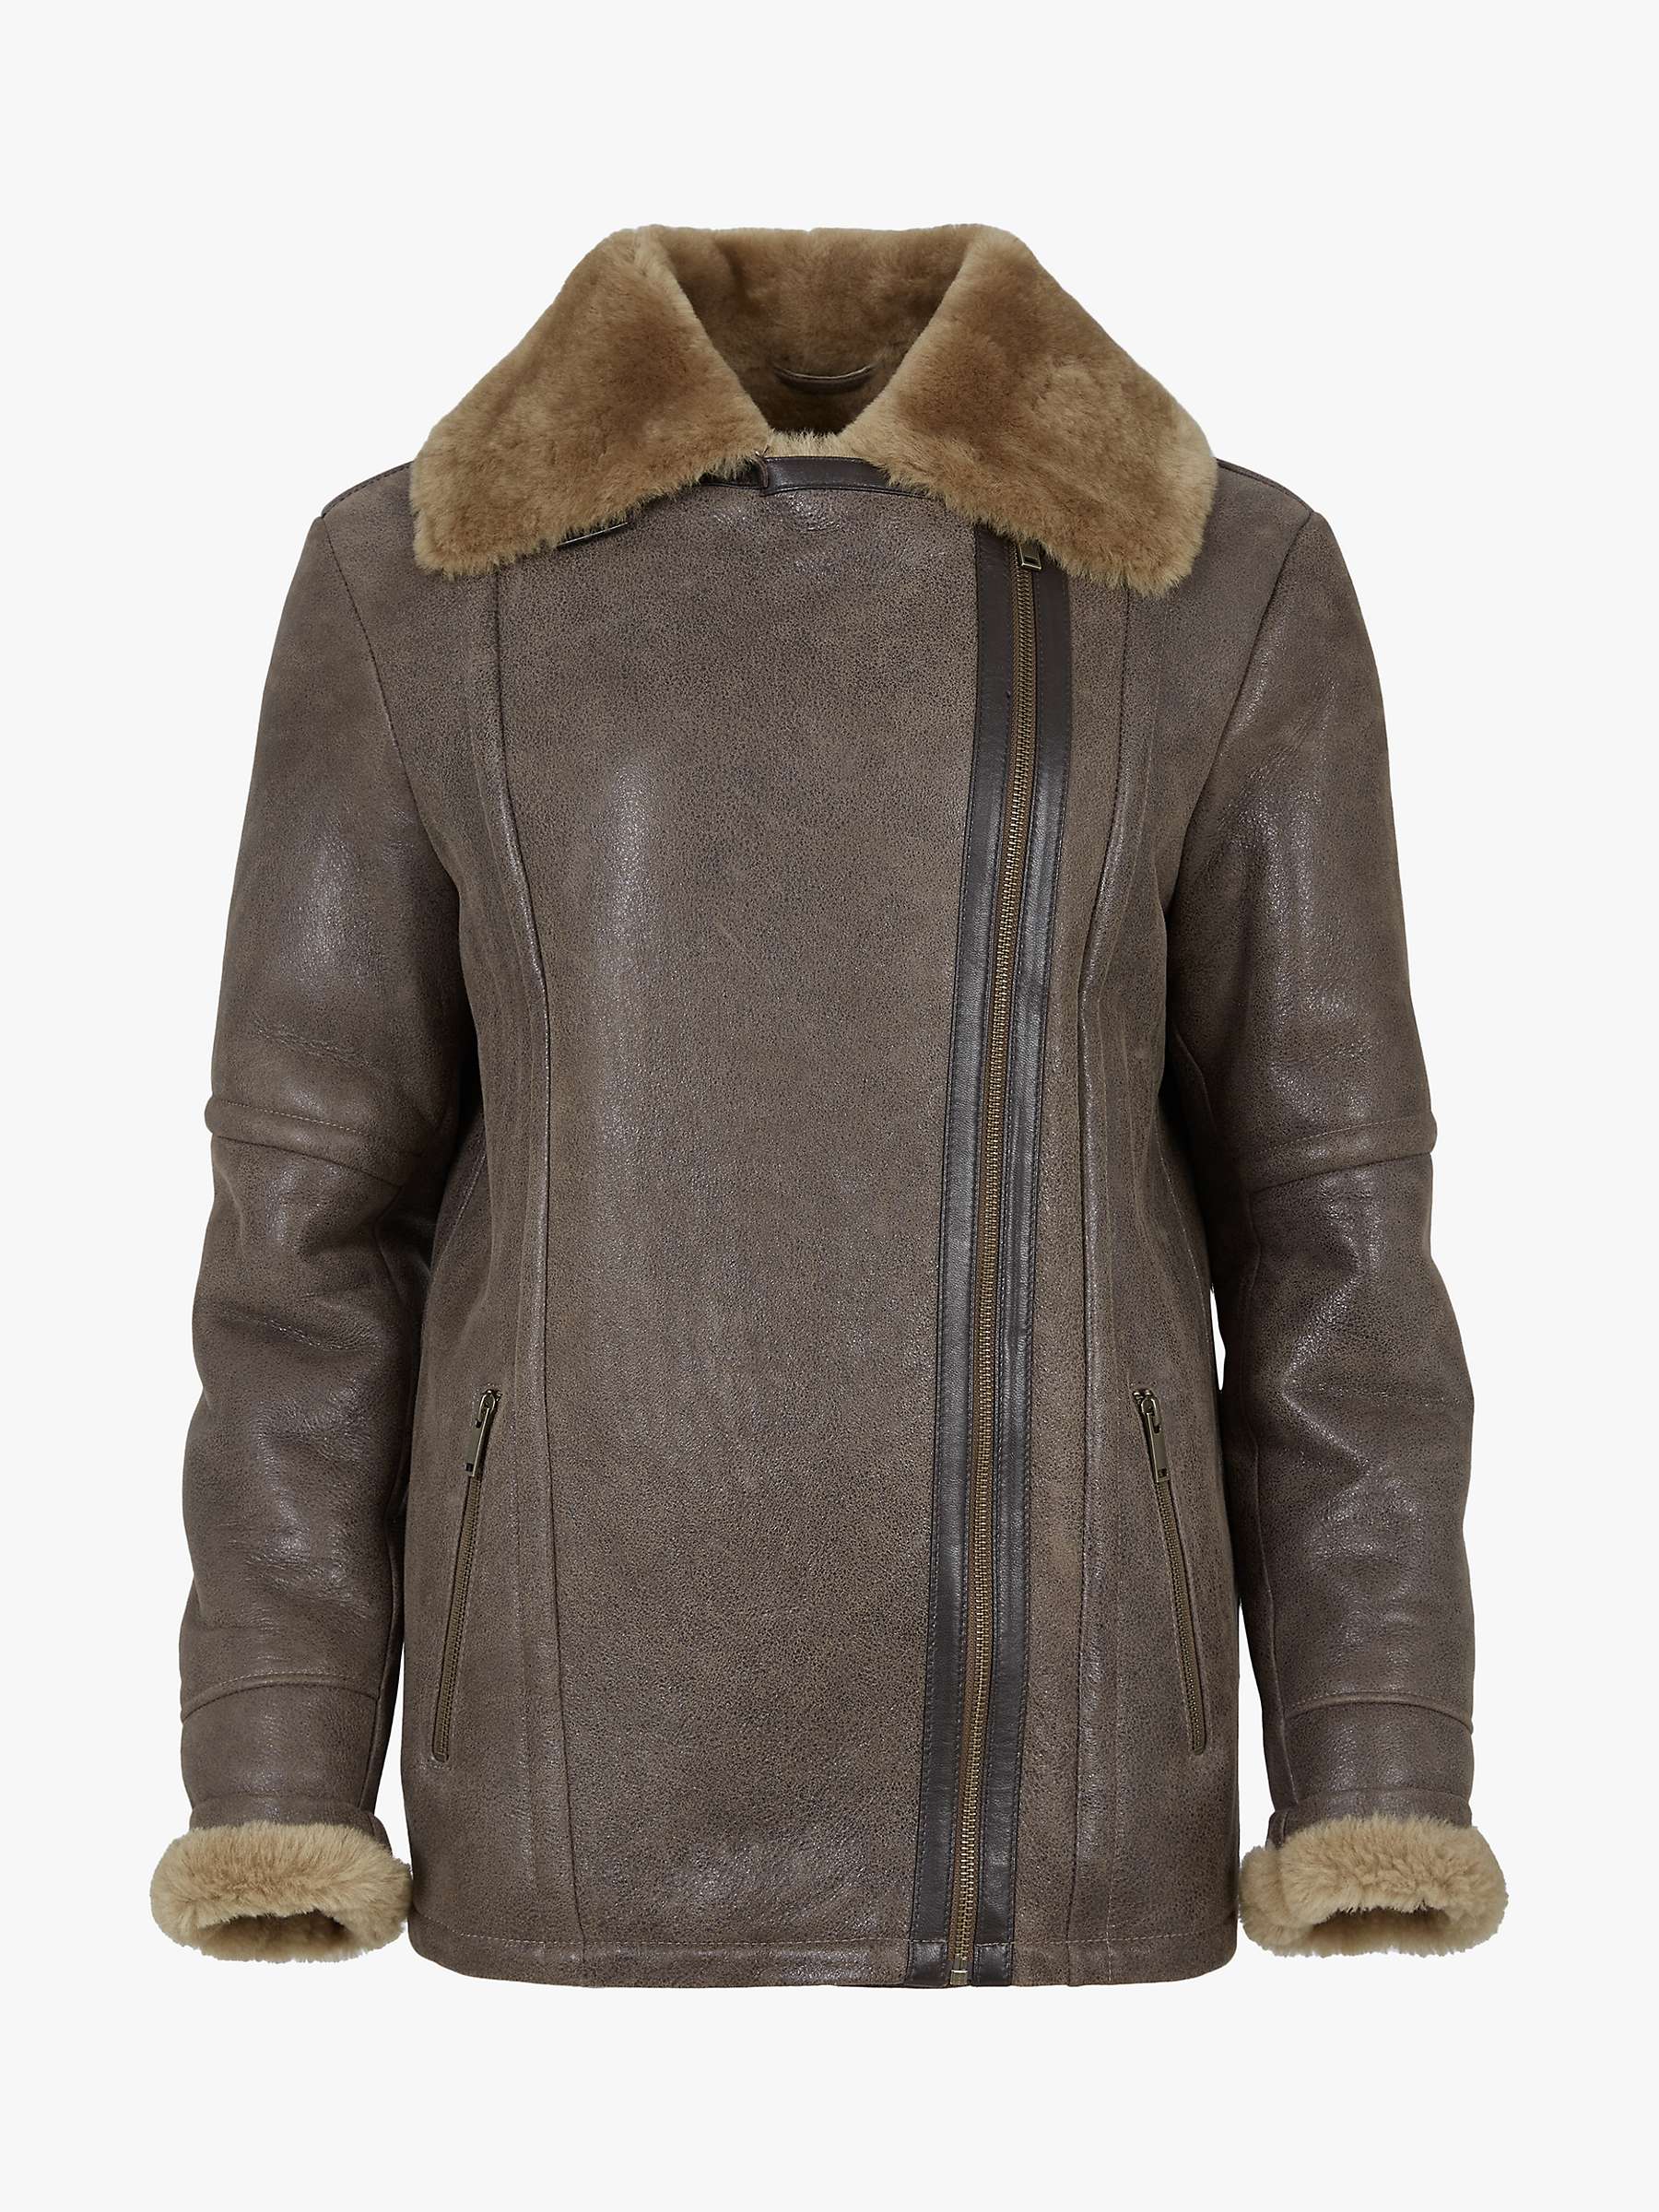 Buy Celtic & Co. Boyfriend Aviator Sheepskin Jacket, Antique/Camel Online at johnlewis.com